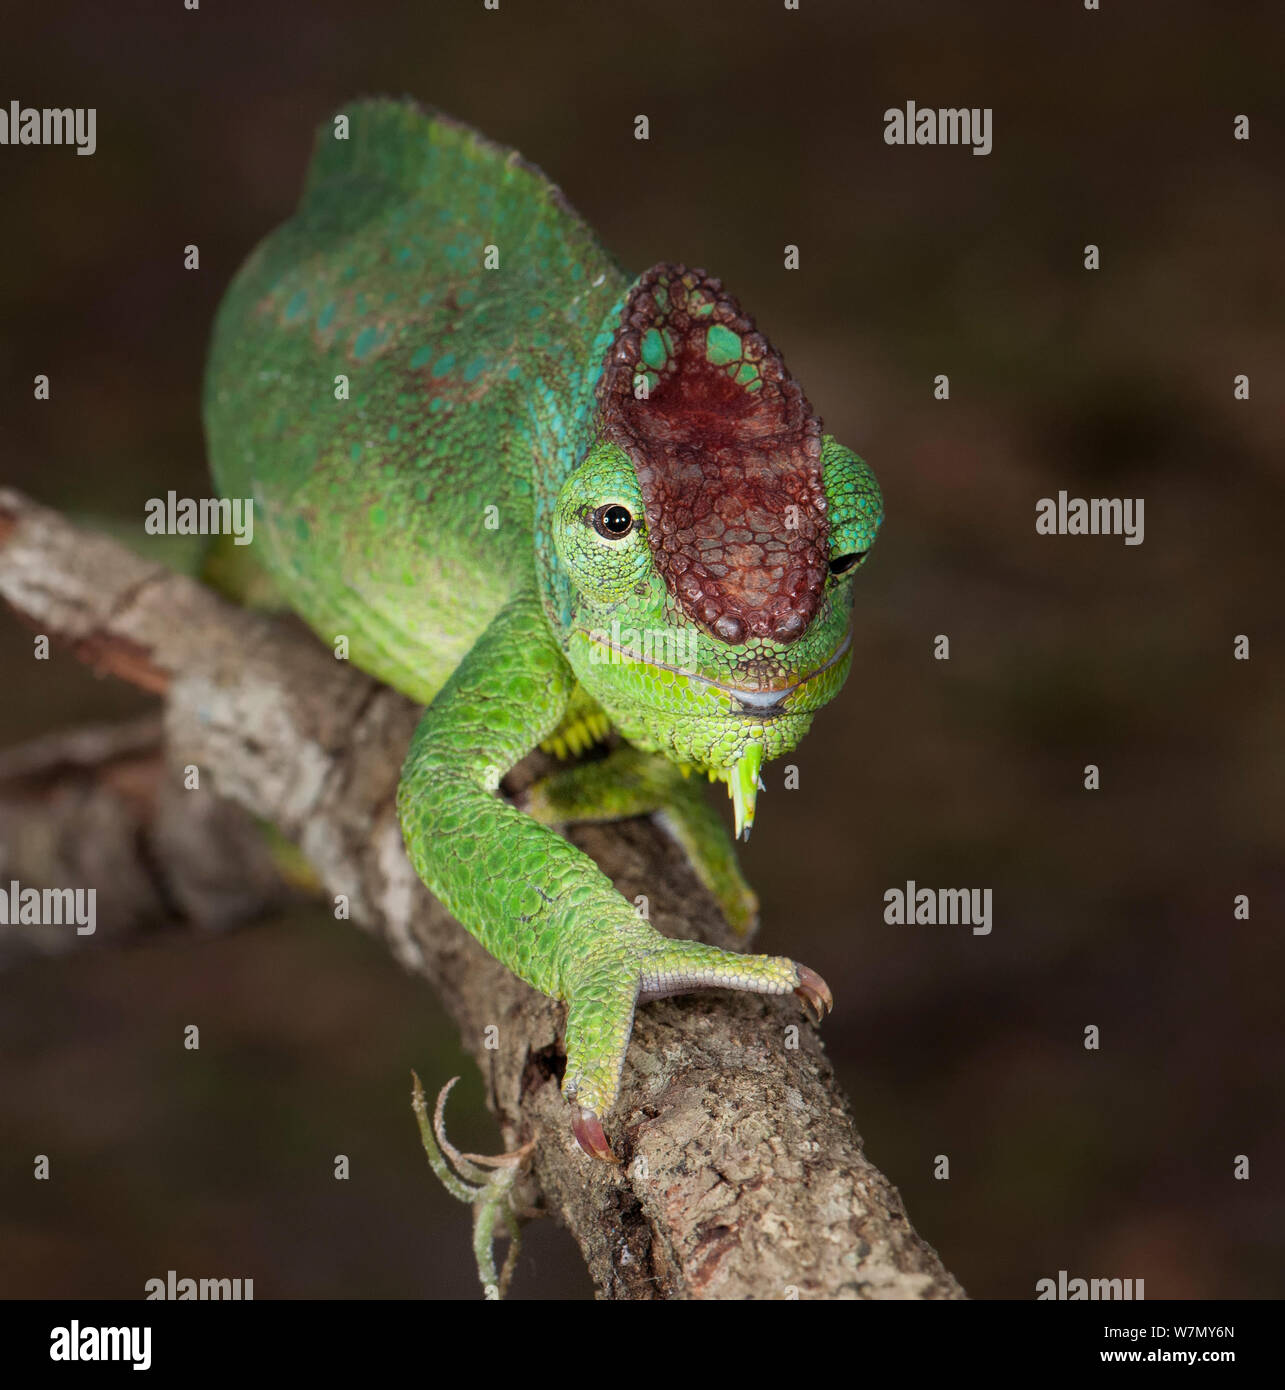 Quatre nord horned chameleon (Trioceros gracilior) quardicornis d'Afrique en captivité Banque D'Images